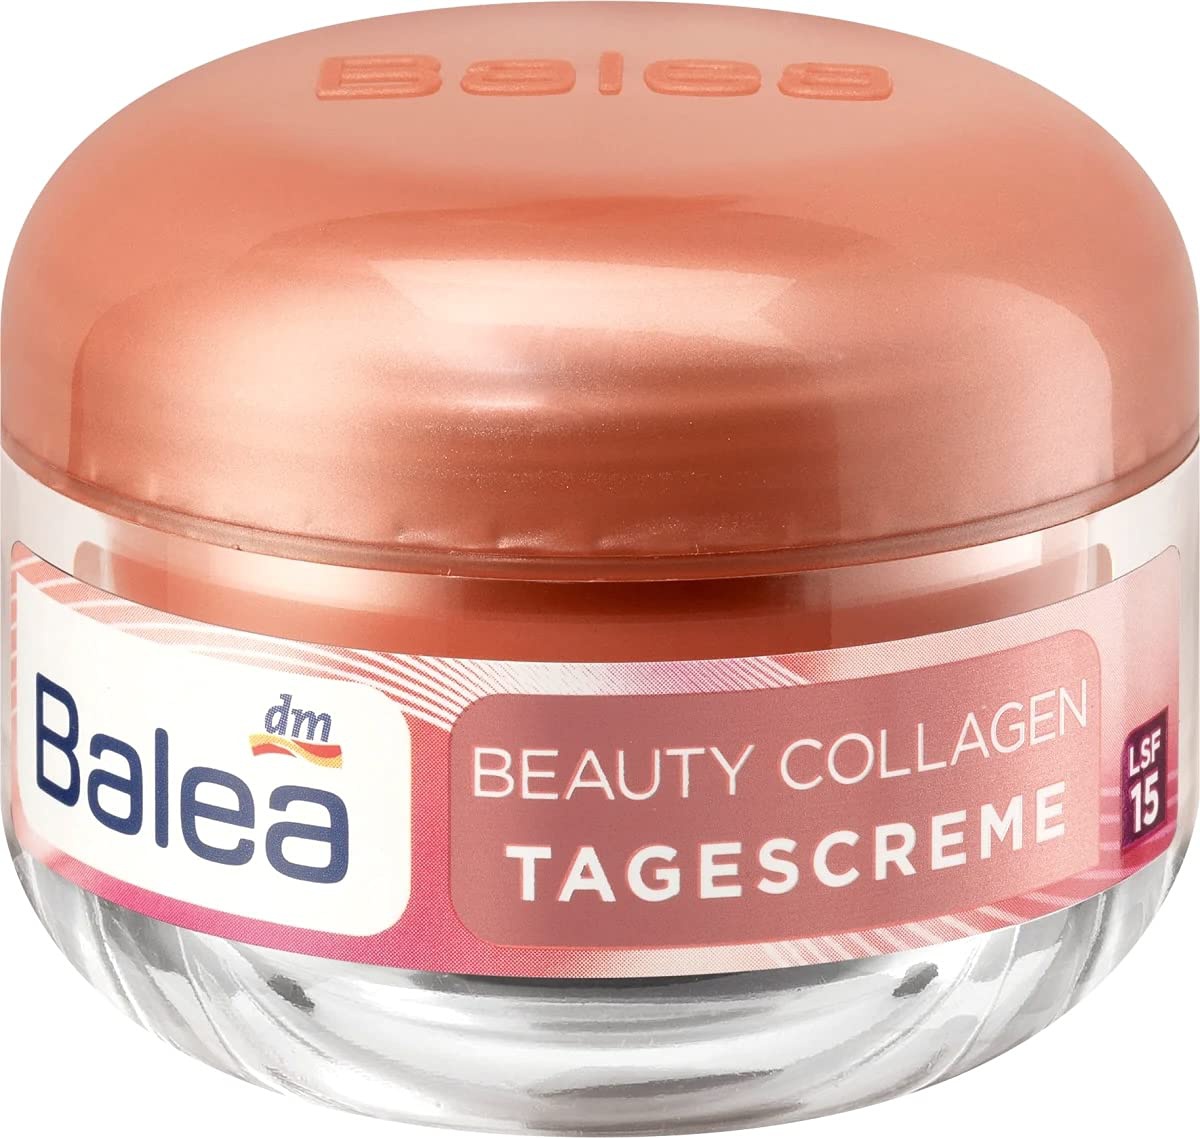 Balea Beauty Collagen Tagescreme LSF 15